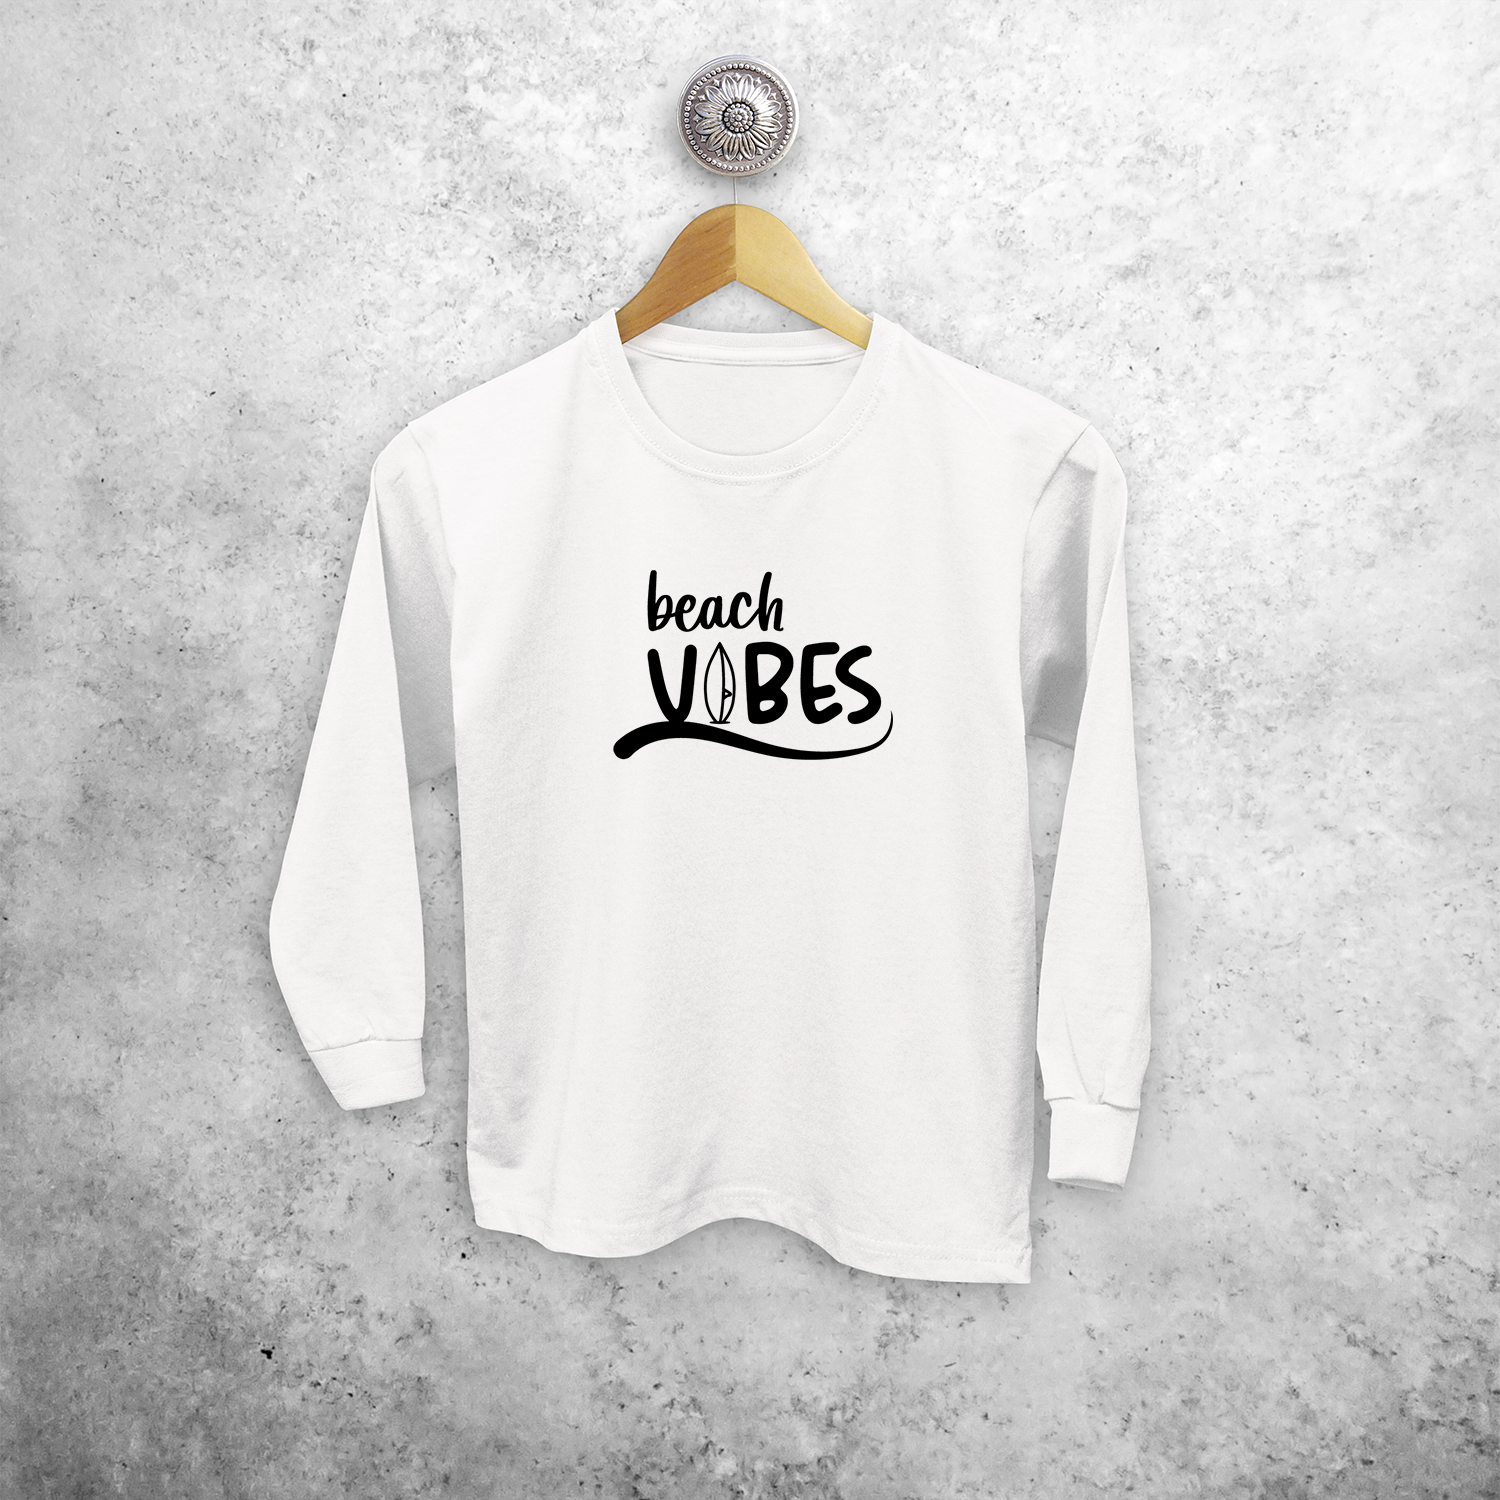 'Beach vibes' kids longsleeve shirt